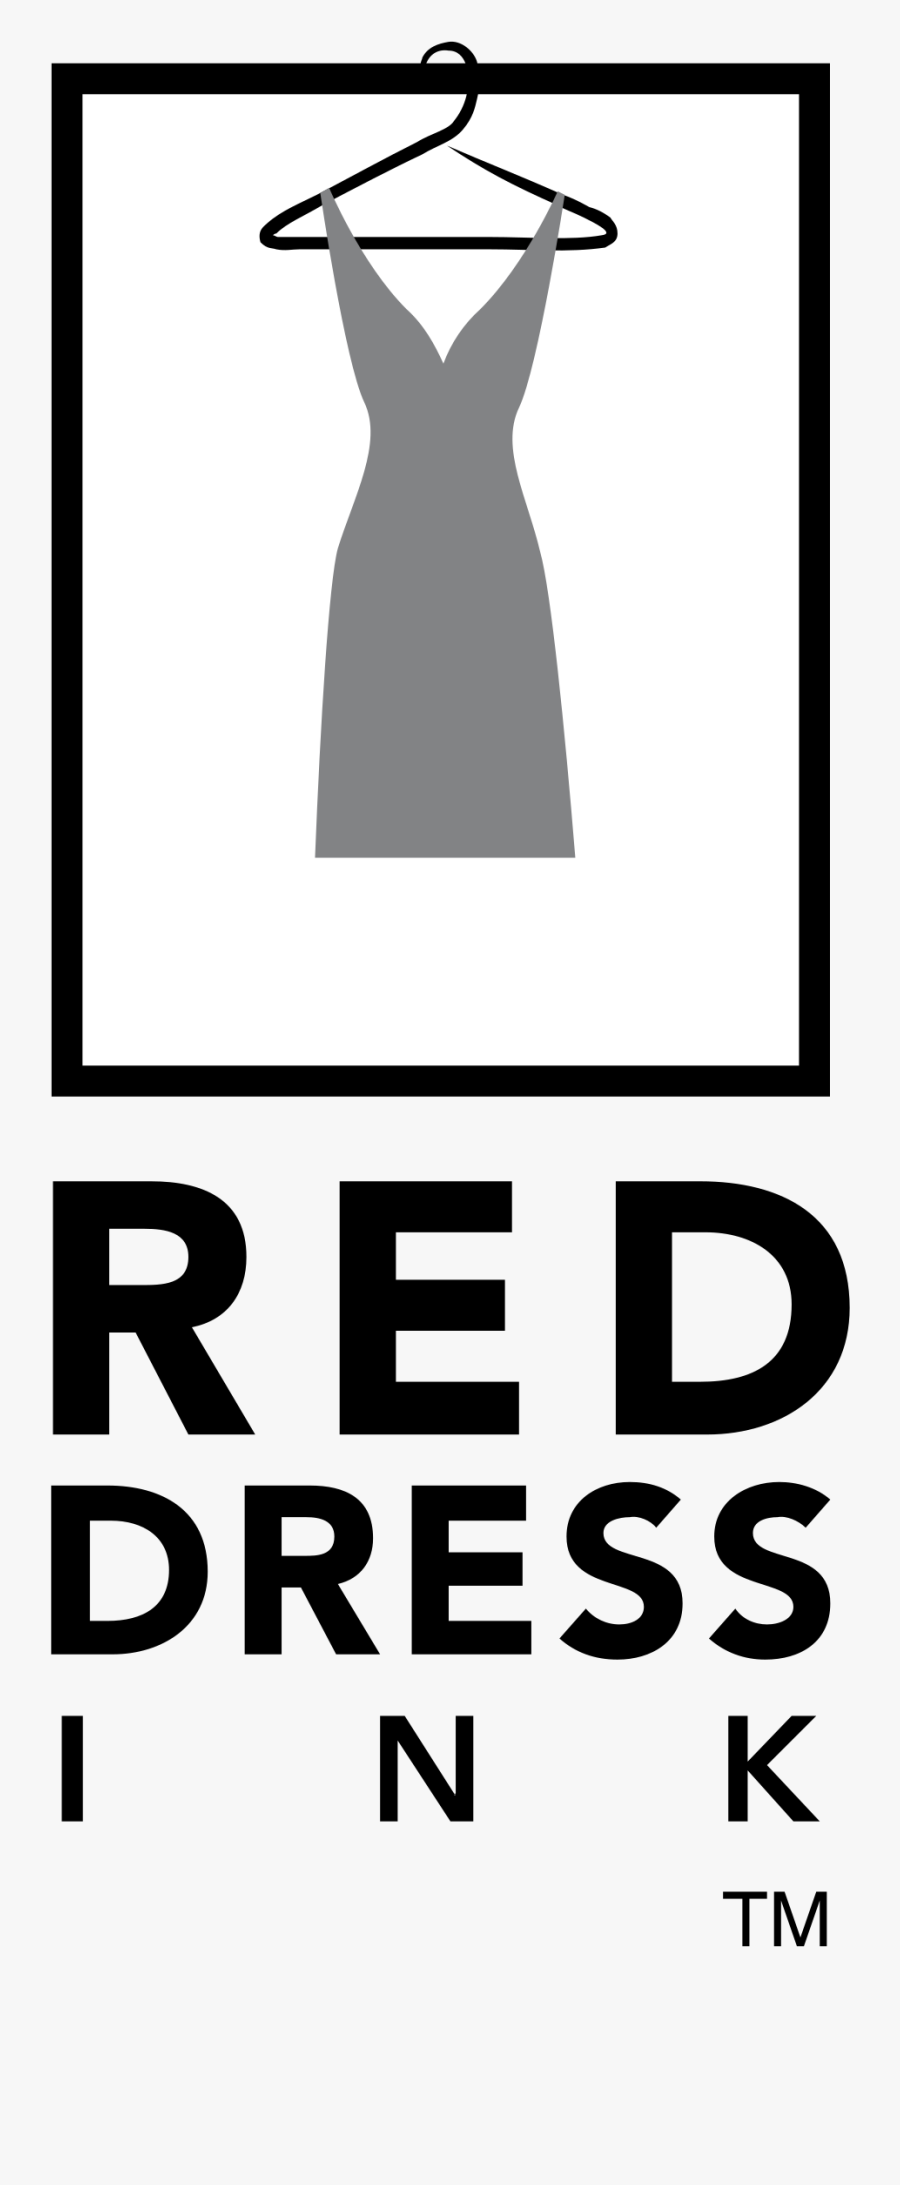 Red Dress Ink Logo Png Transparent - Red Dress Ink, Transparent Clipart